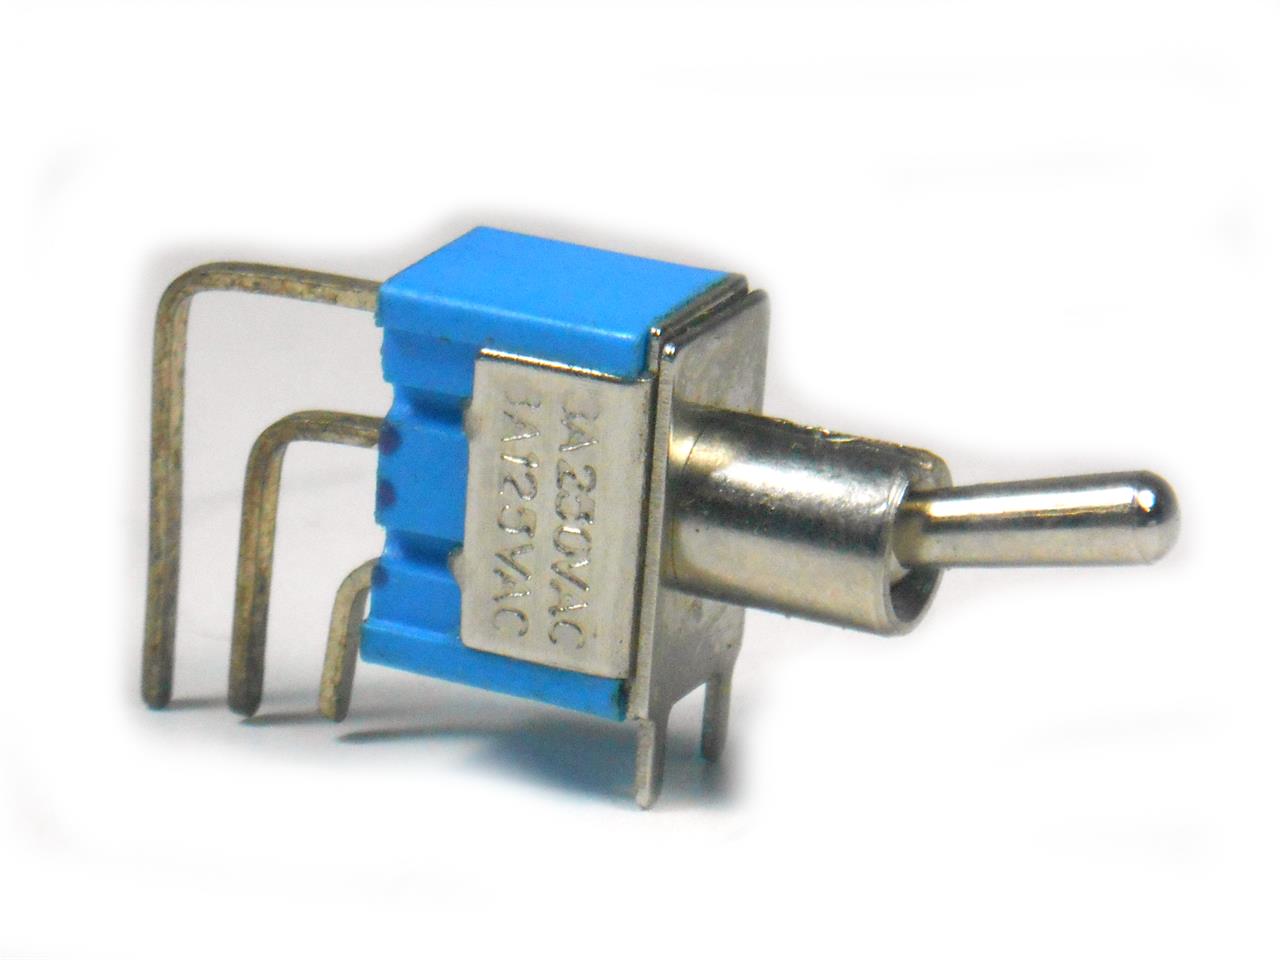 Interruptores de Alavanca - Chave alavanca 1 polo 2 posições para placa